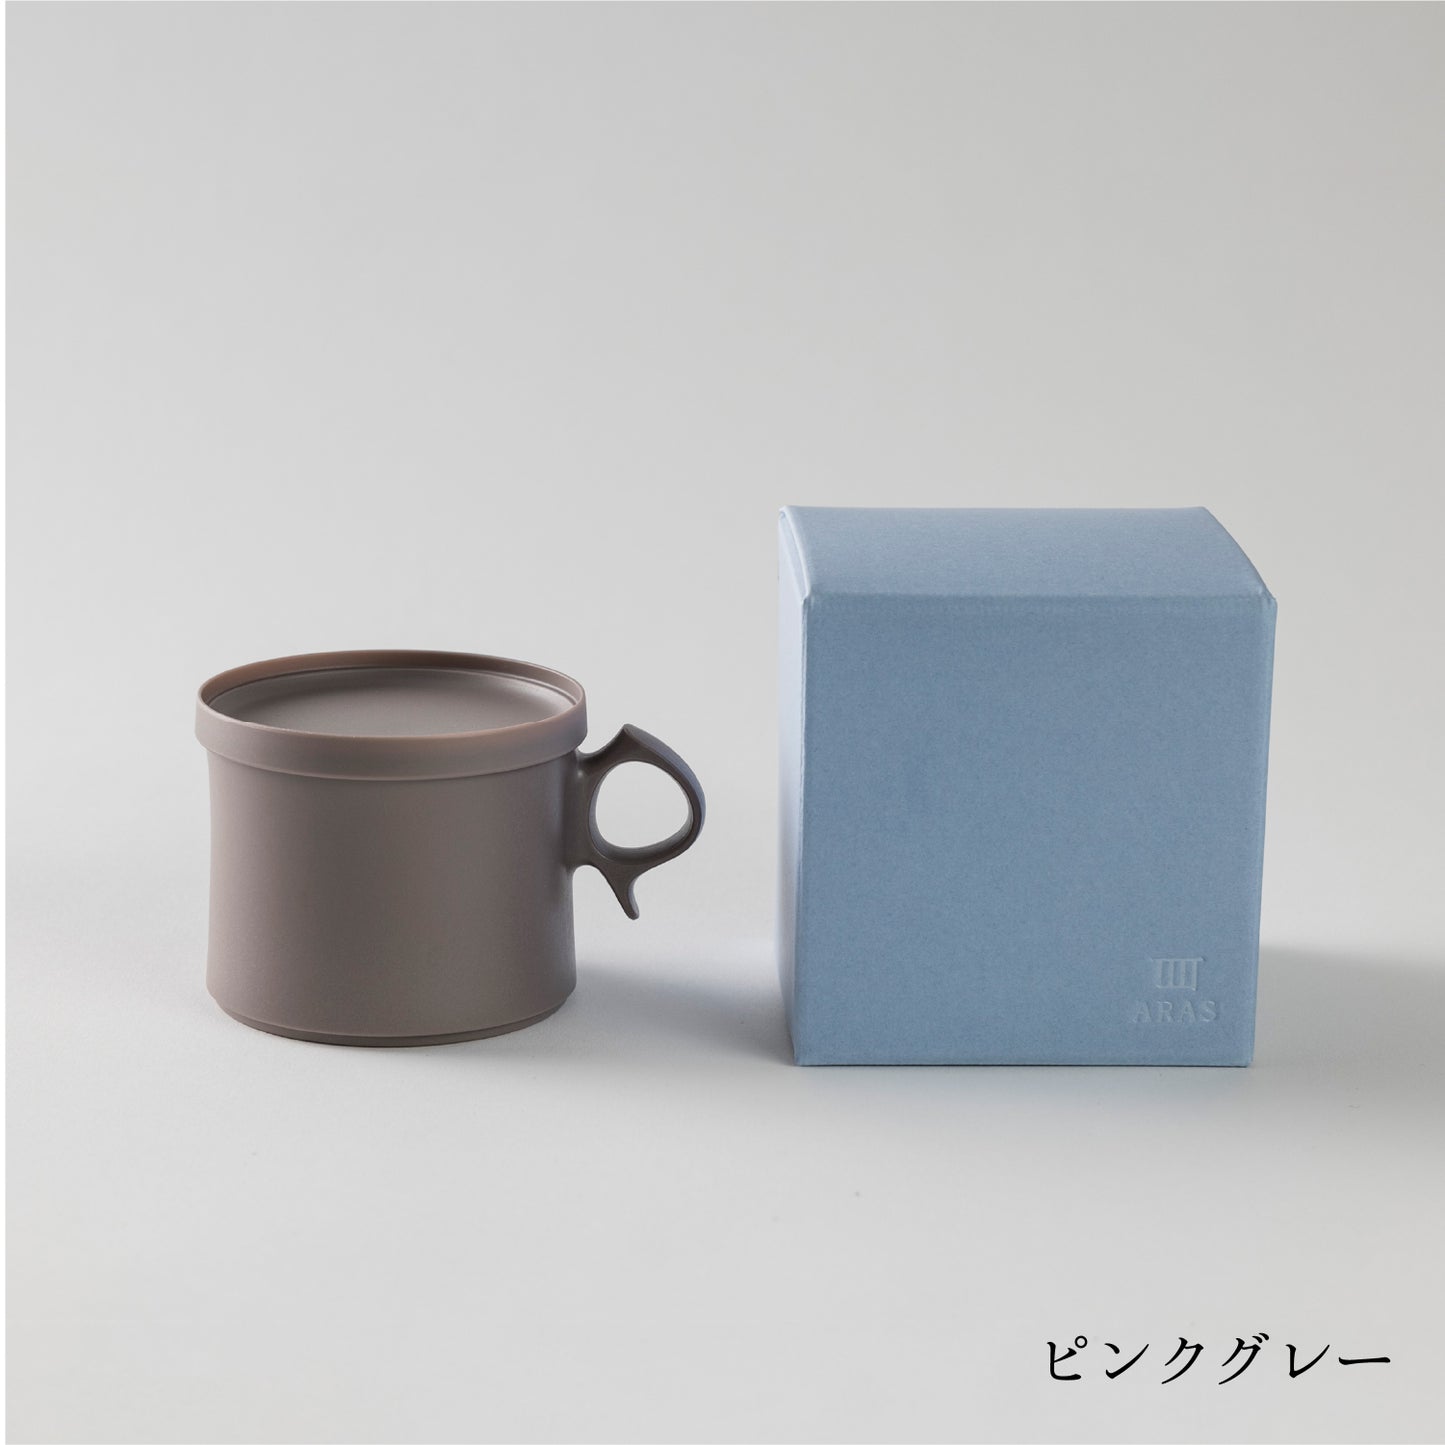 Small mug (210 ml)